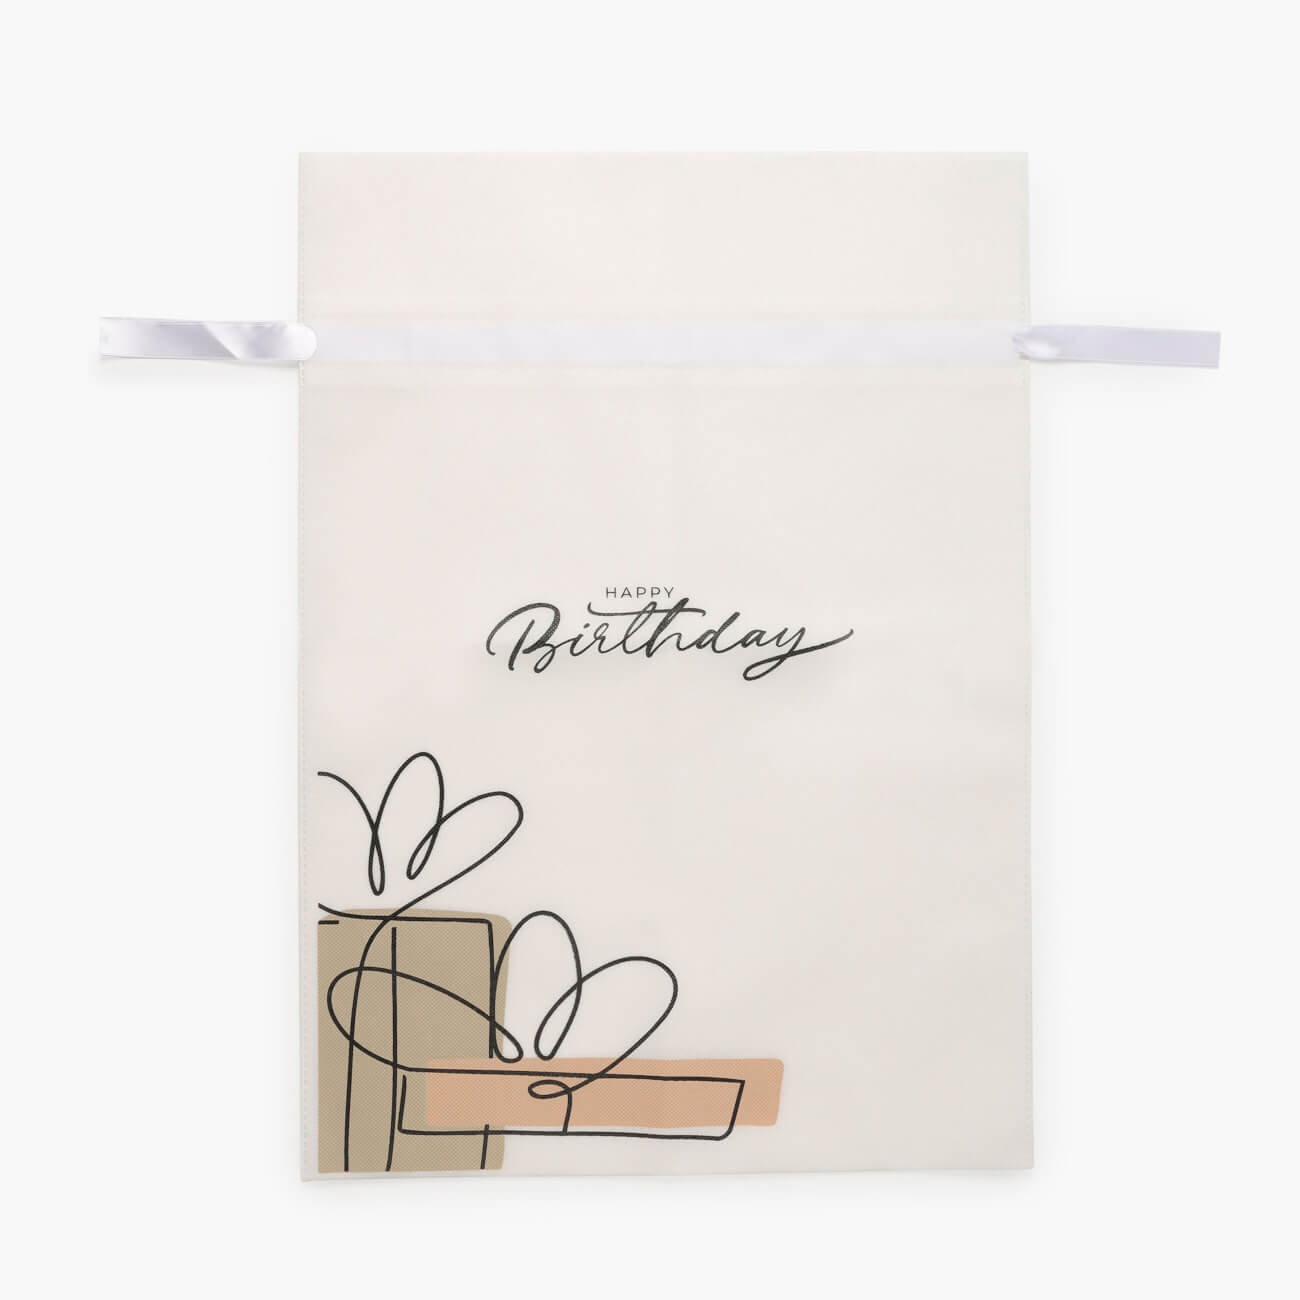 Мешок подарочный, 30х45 см, с завязками, полипропилен, белый, Happy Birthday, Birthday jbl filterbag wide мешок для грубых фильтрующих материалов